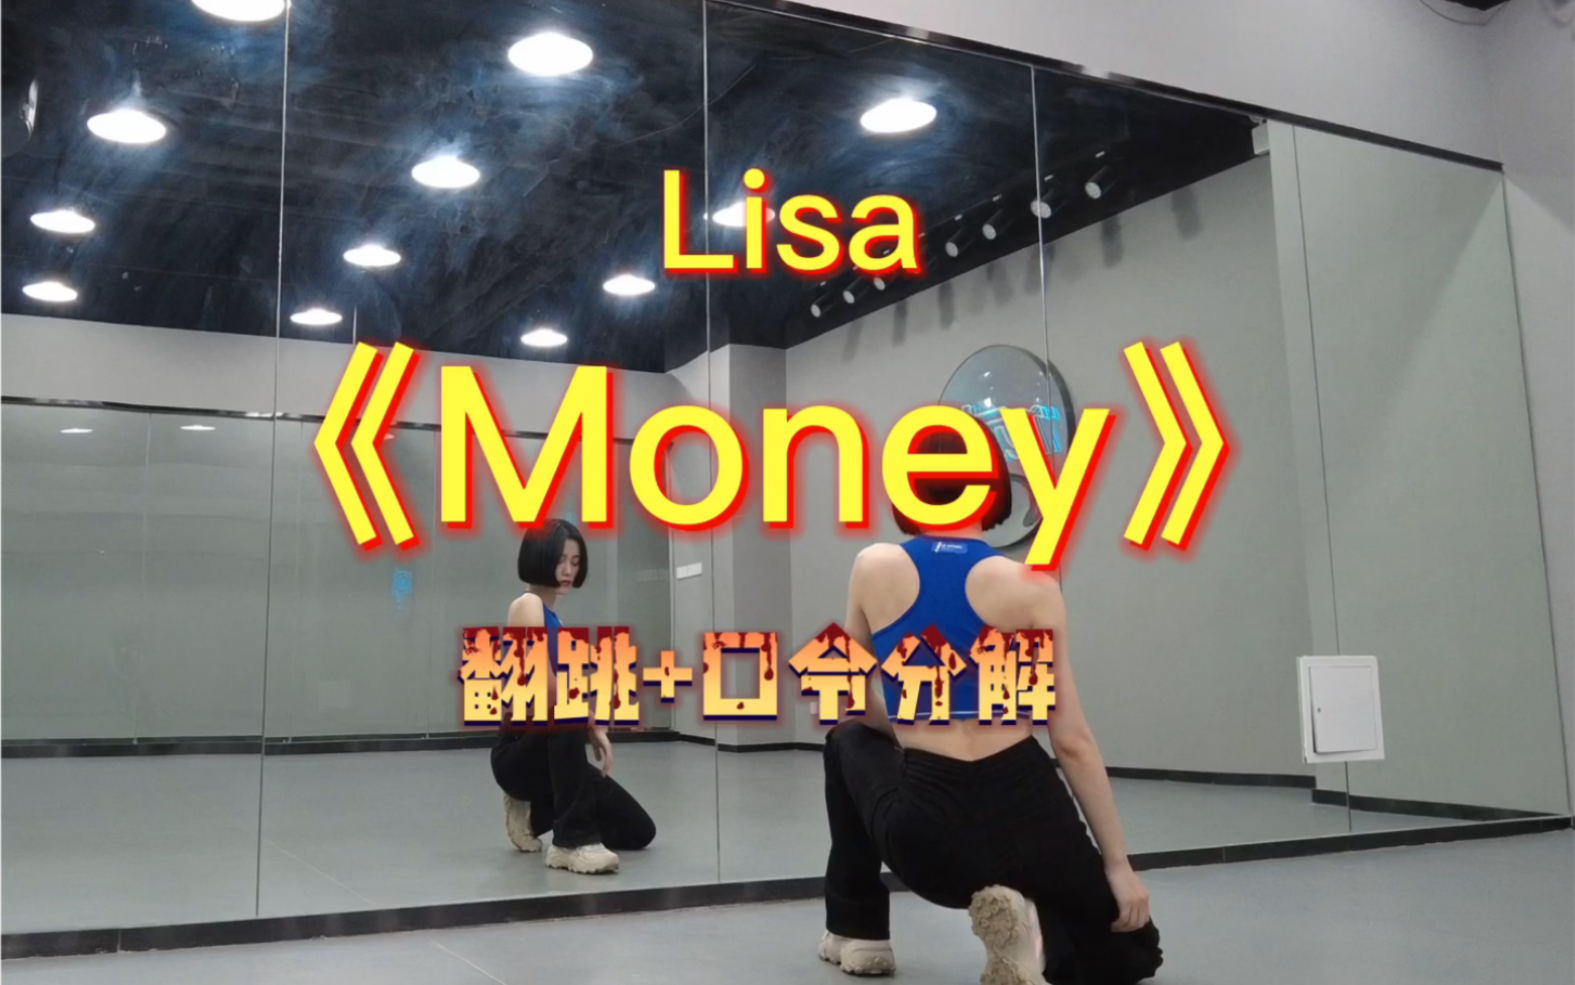 Lisa《Money》翻跳完整2′左右+口令分解教学/持续更新